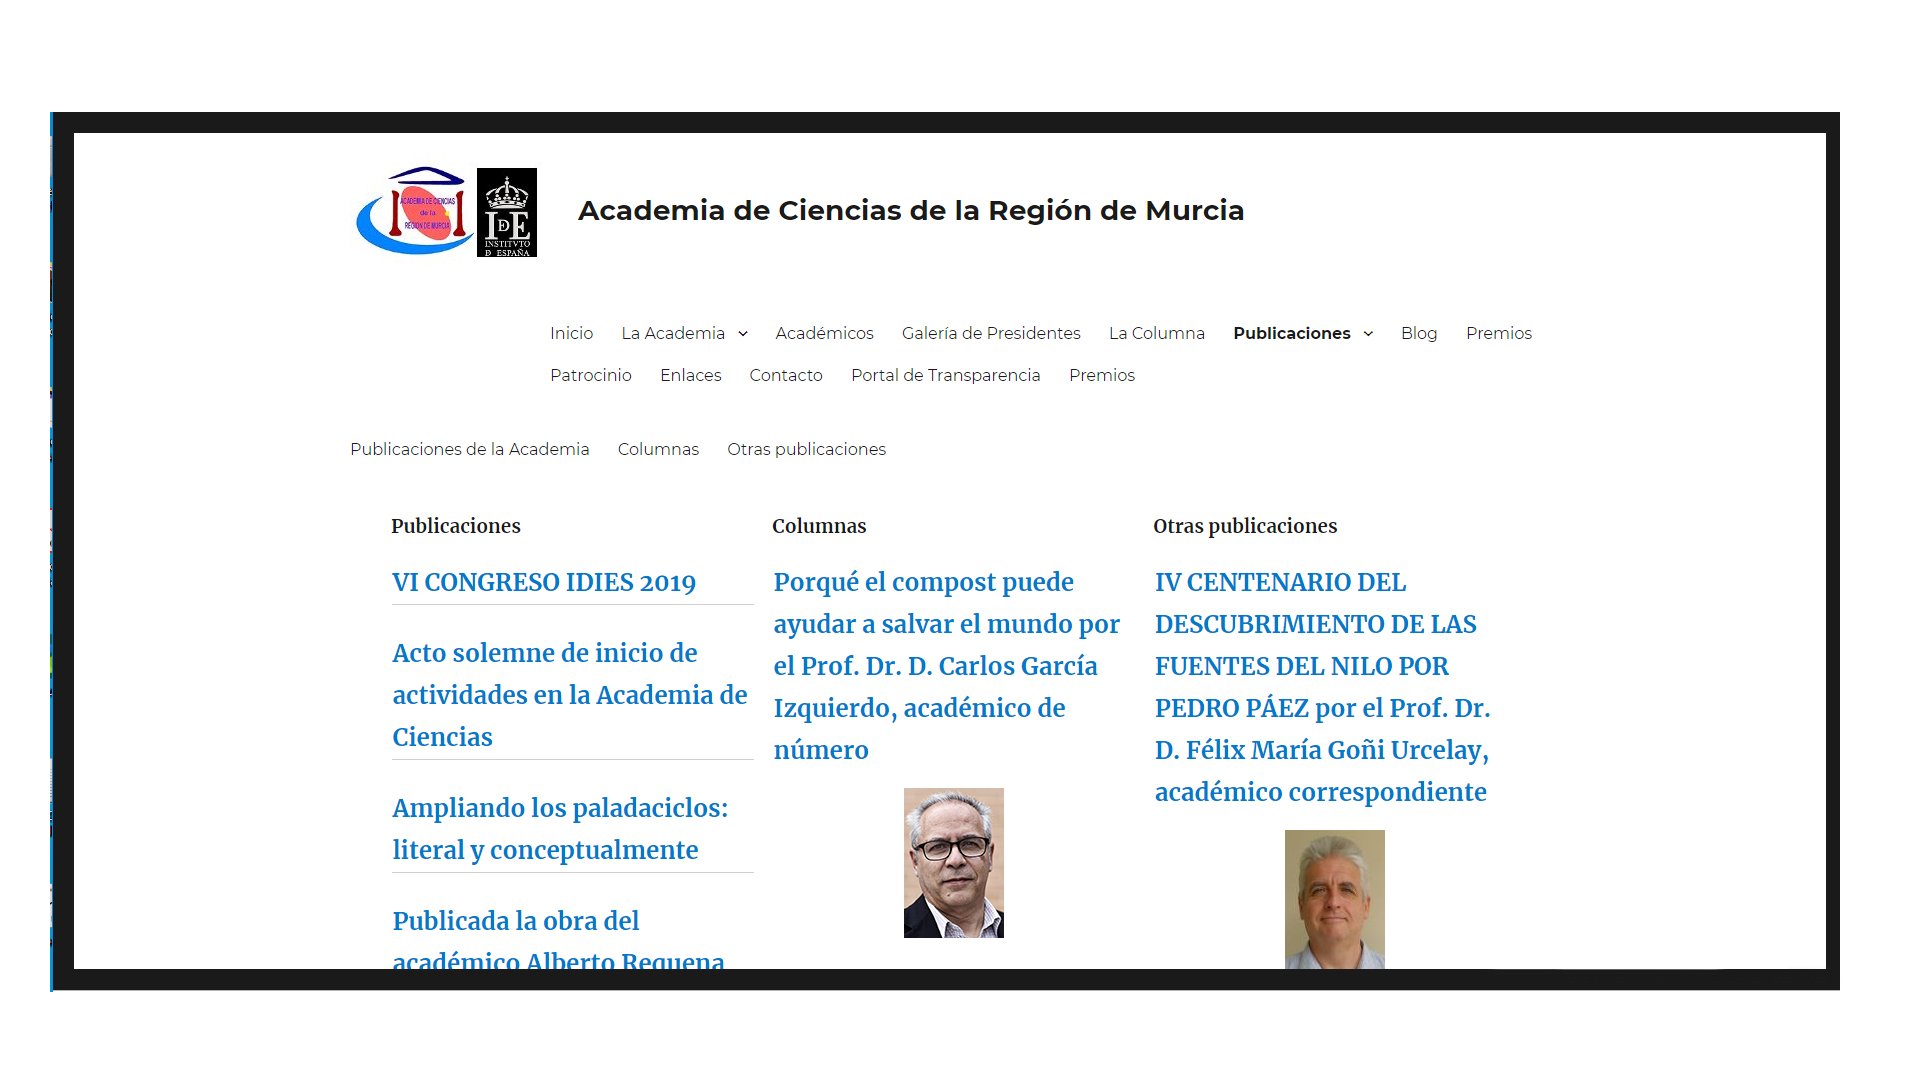 Pantallazo de la página web de la Academia de Ciencias de la Región de Murcia